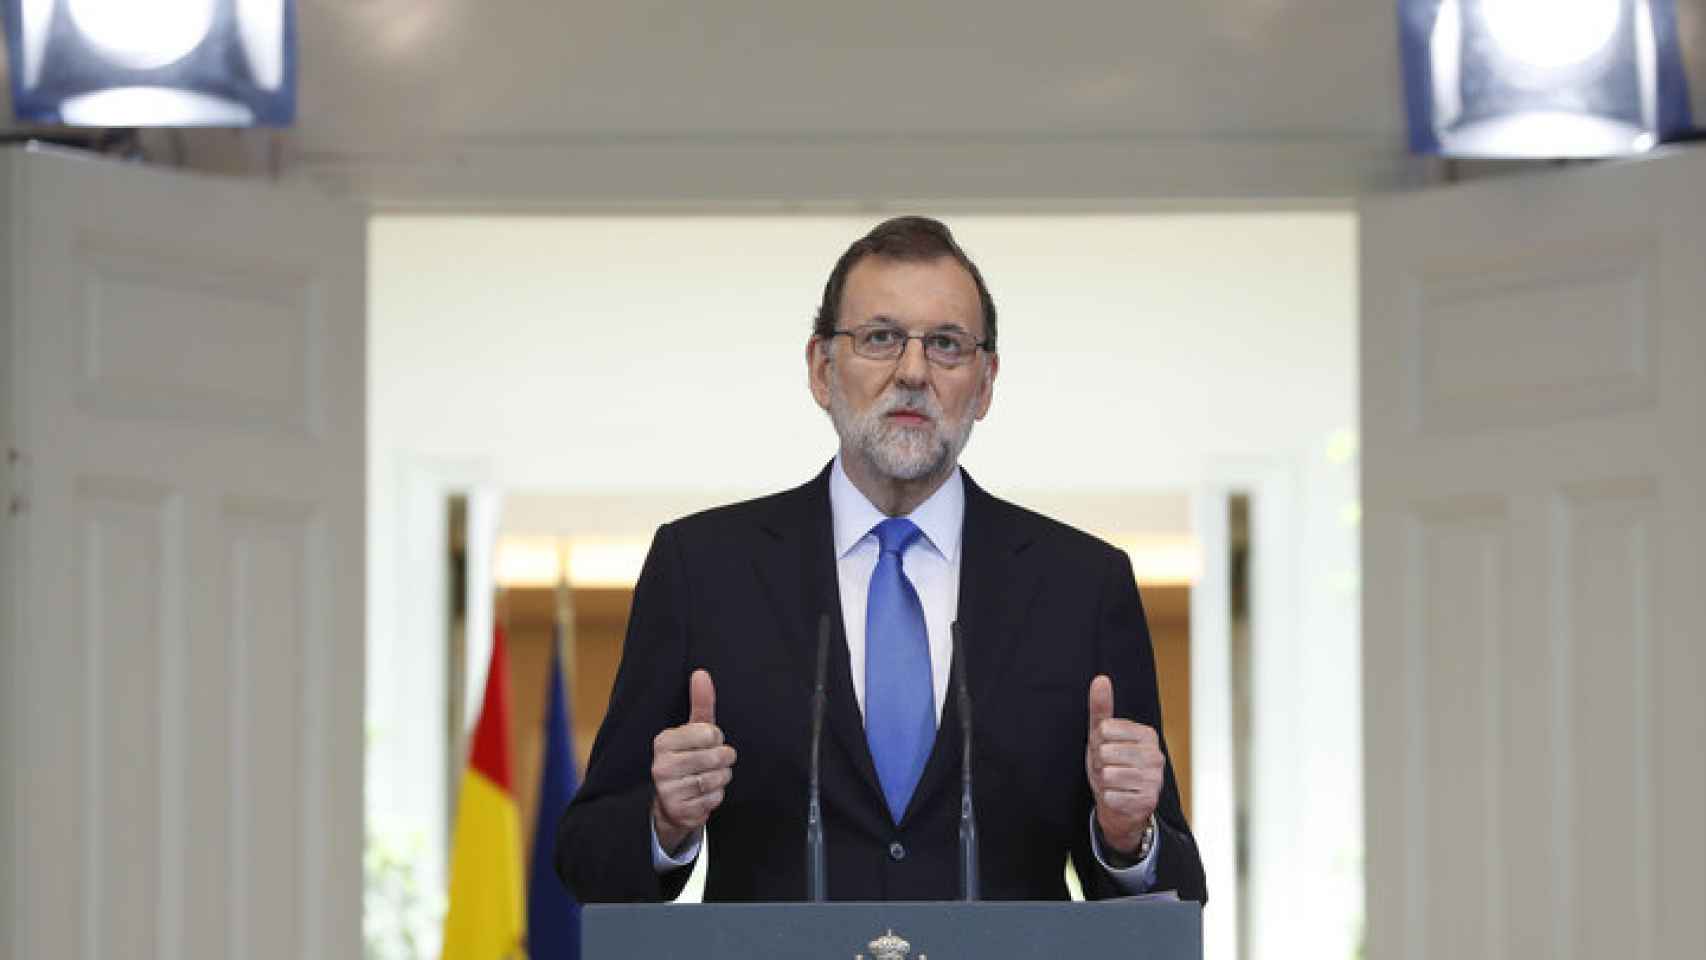 Rajoy: Siempre he querido dialogar con Cataluña. Mantengo esa posición